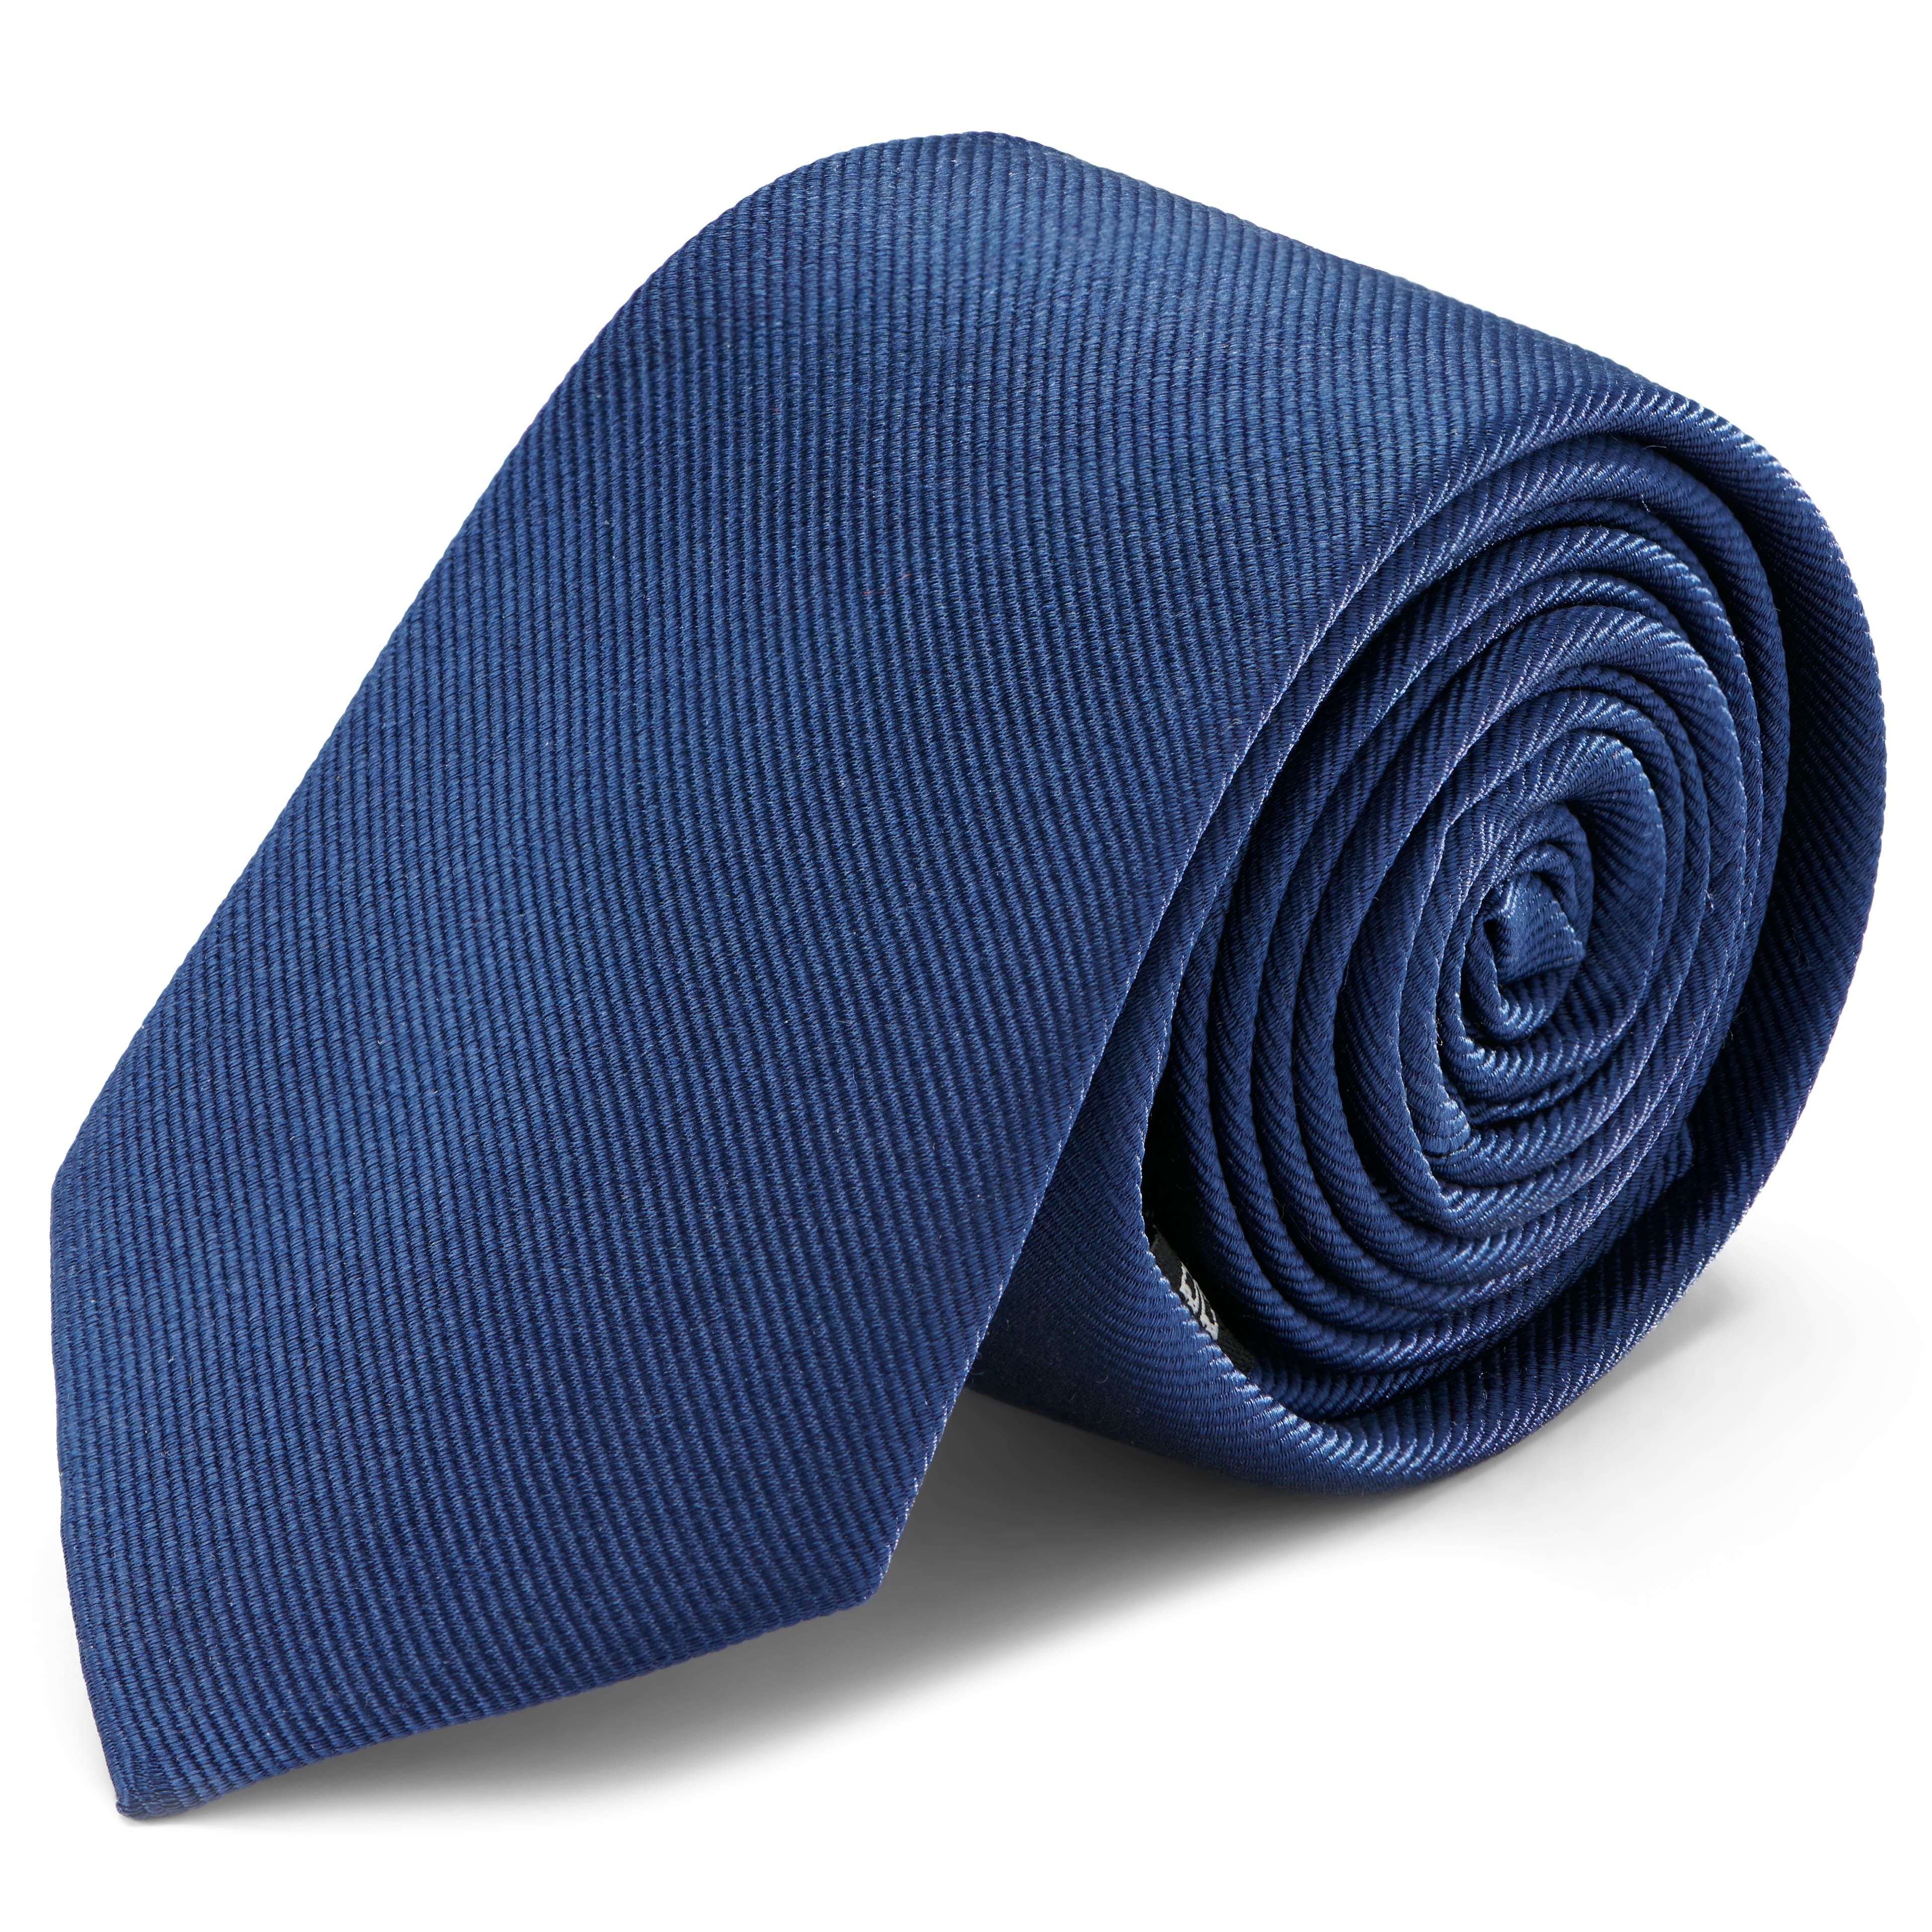 Cravate bleu marine en sergé de soie 6 cm